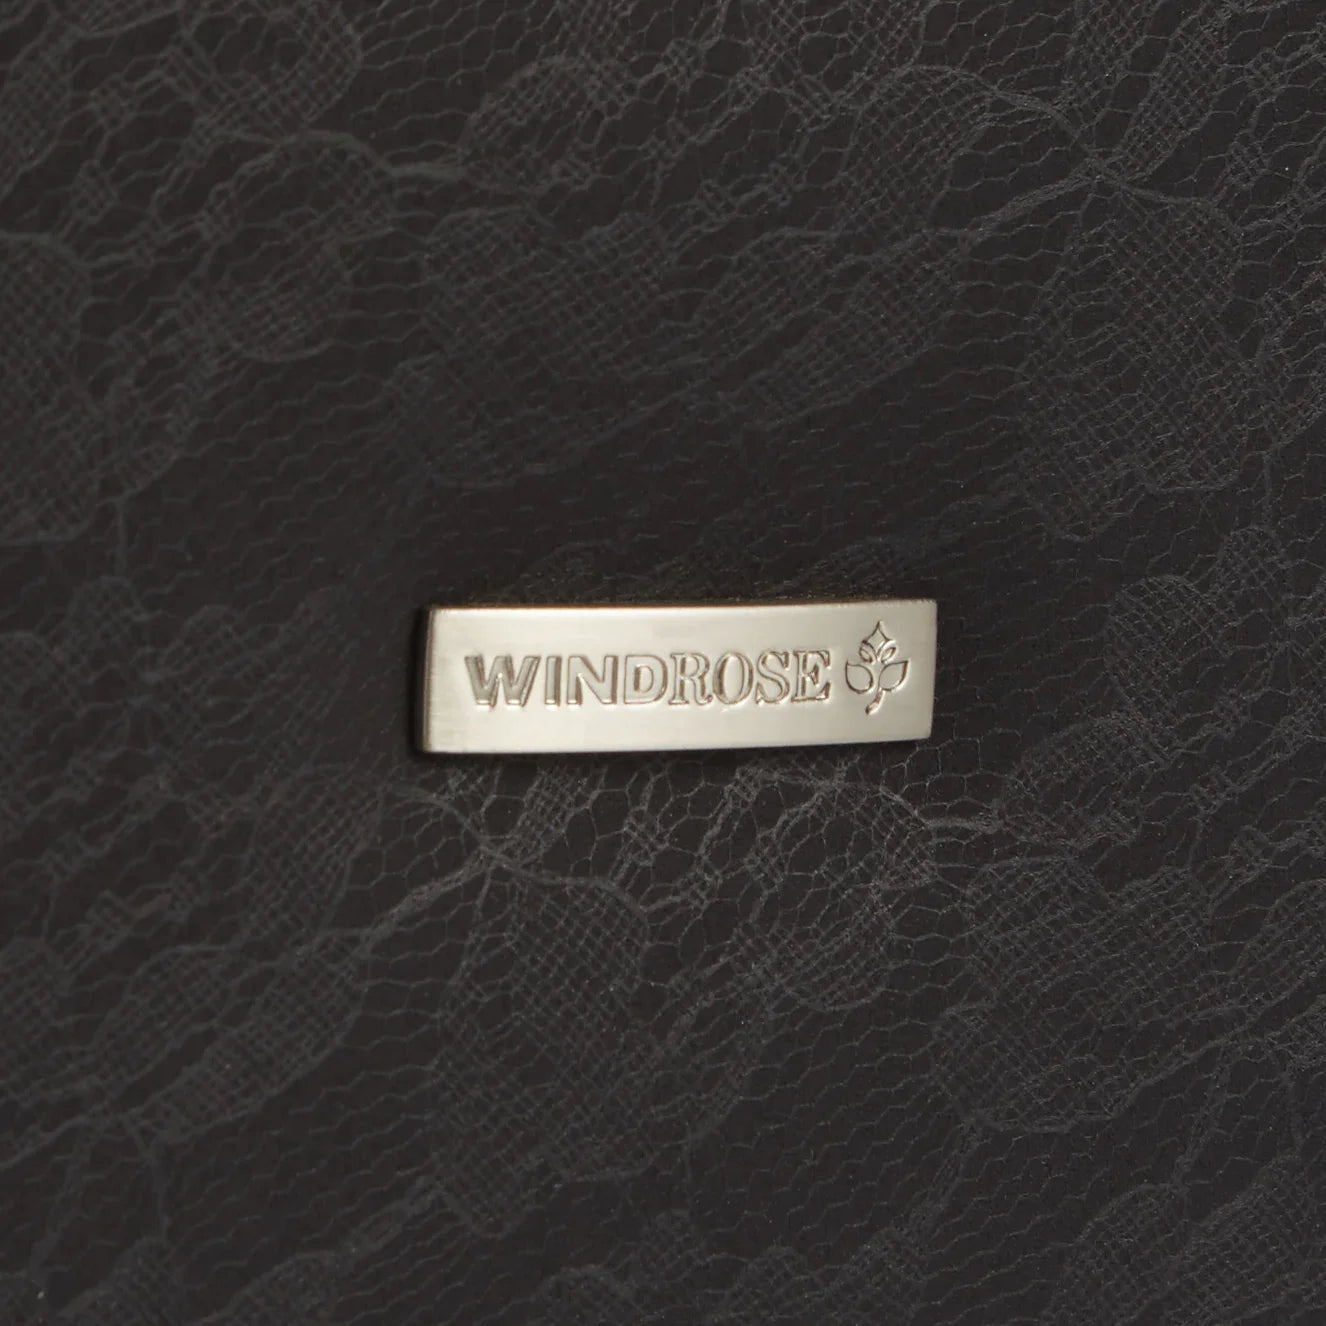 Windrose Fiore Limited Edition Schmuckkoffer 24 cm - braun